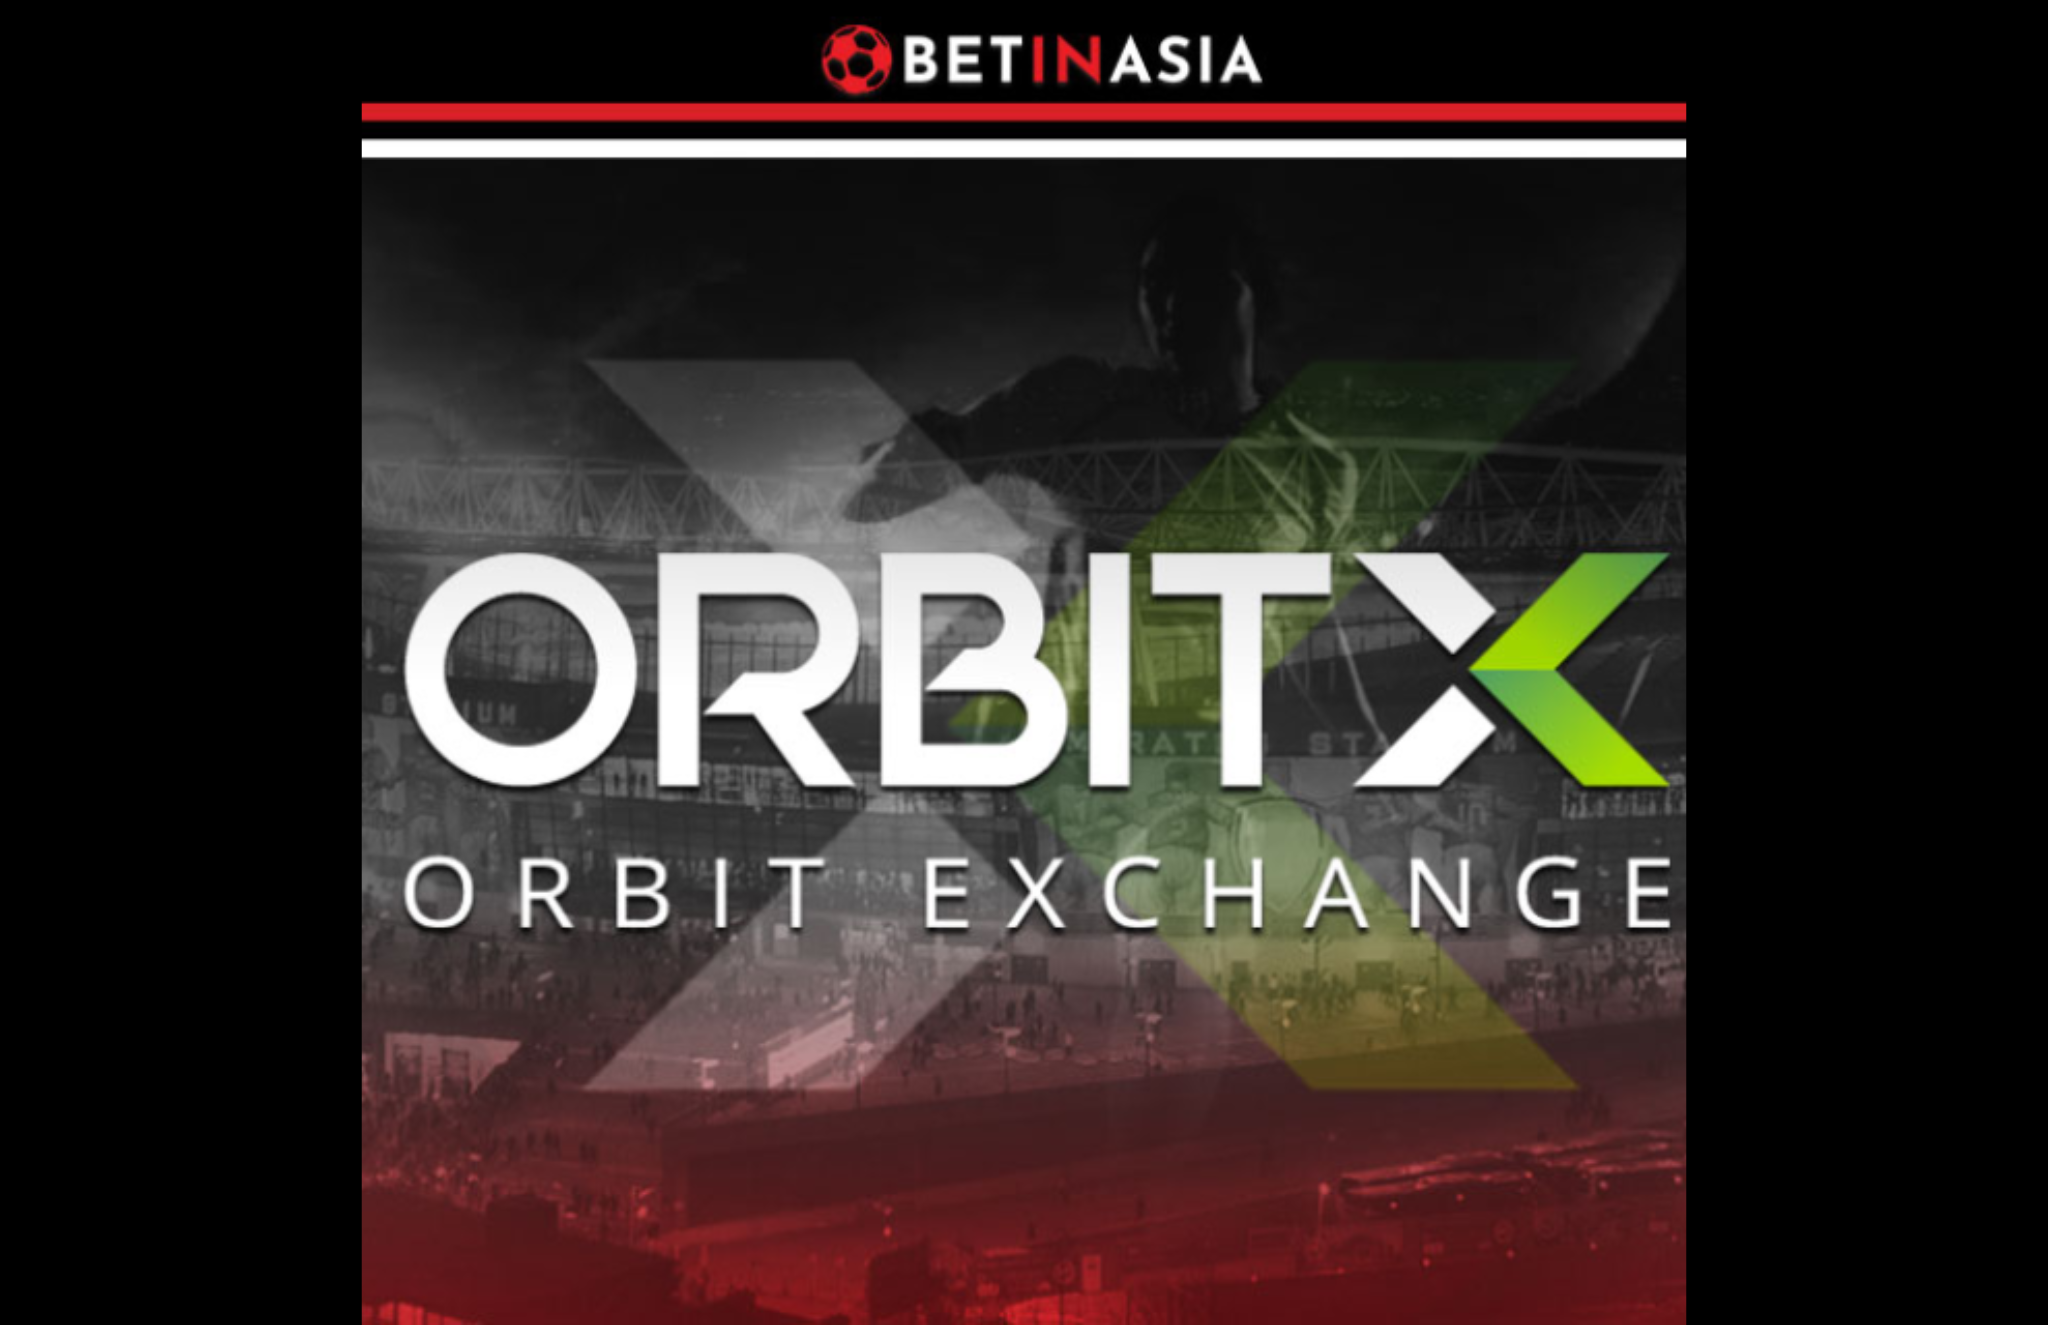 Orbit Exchange